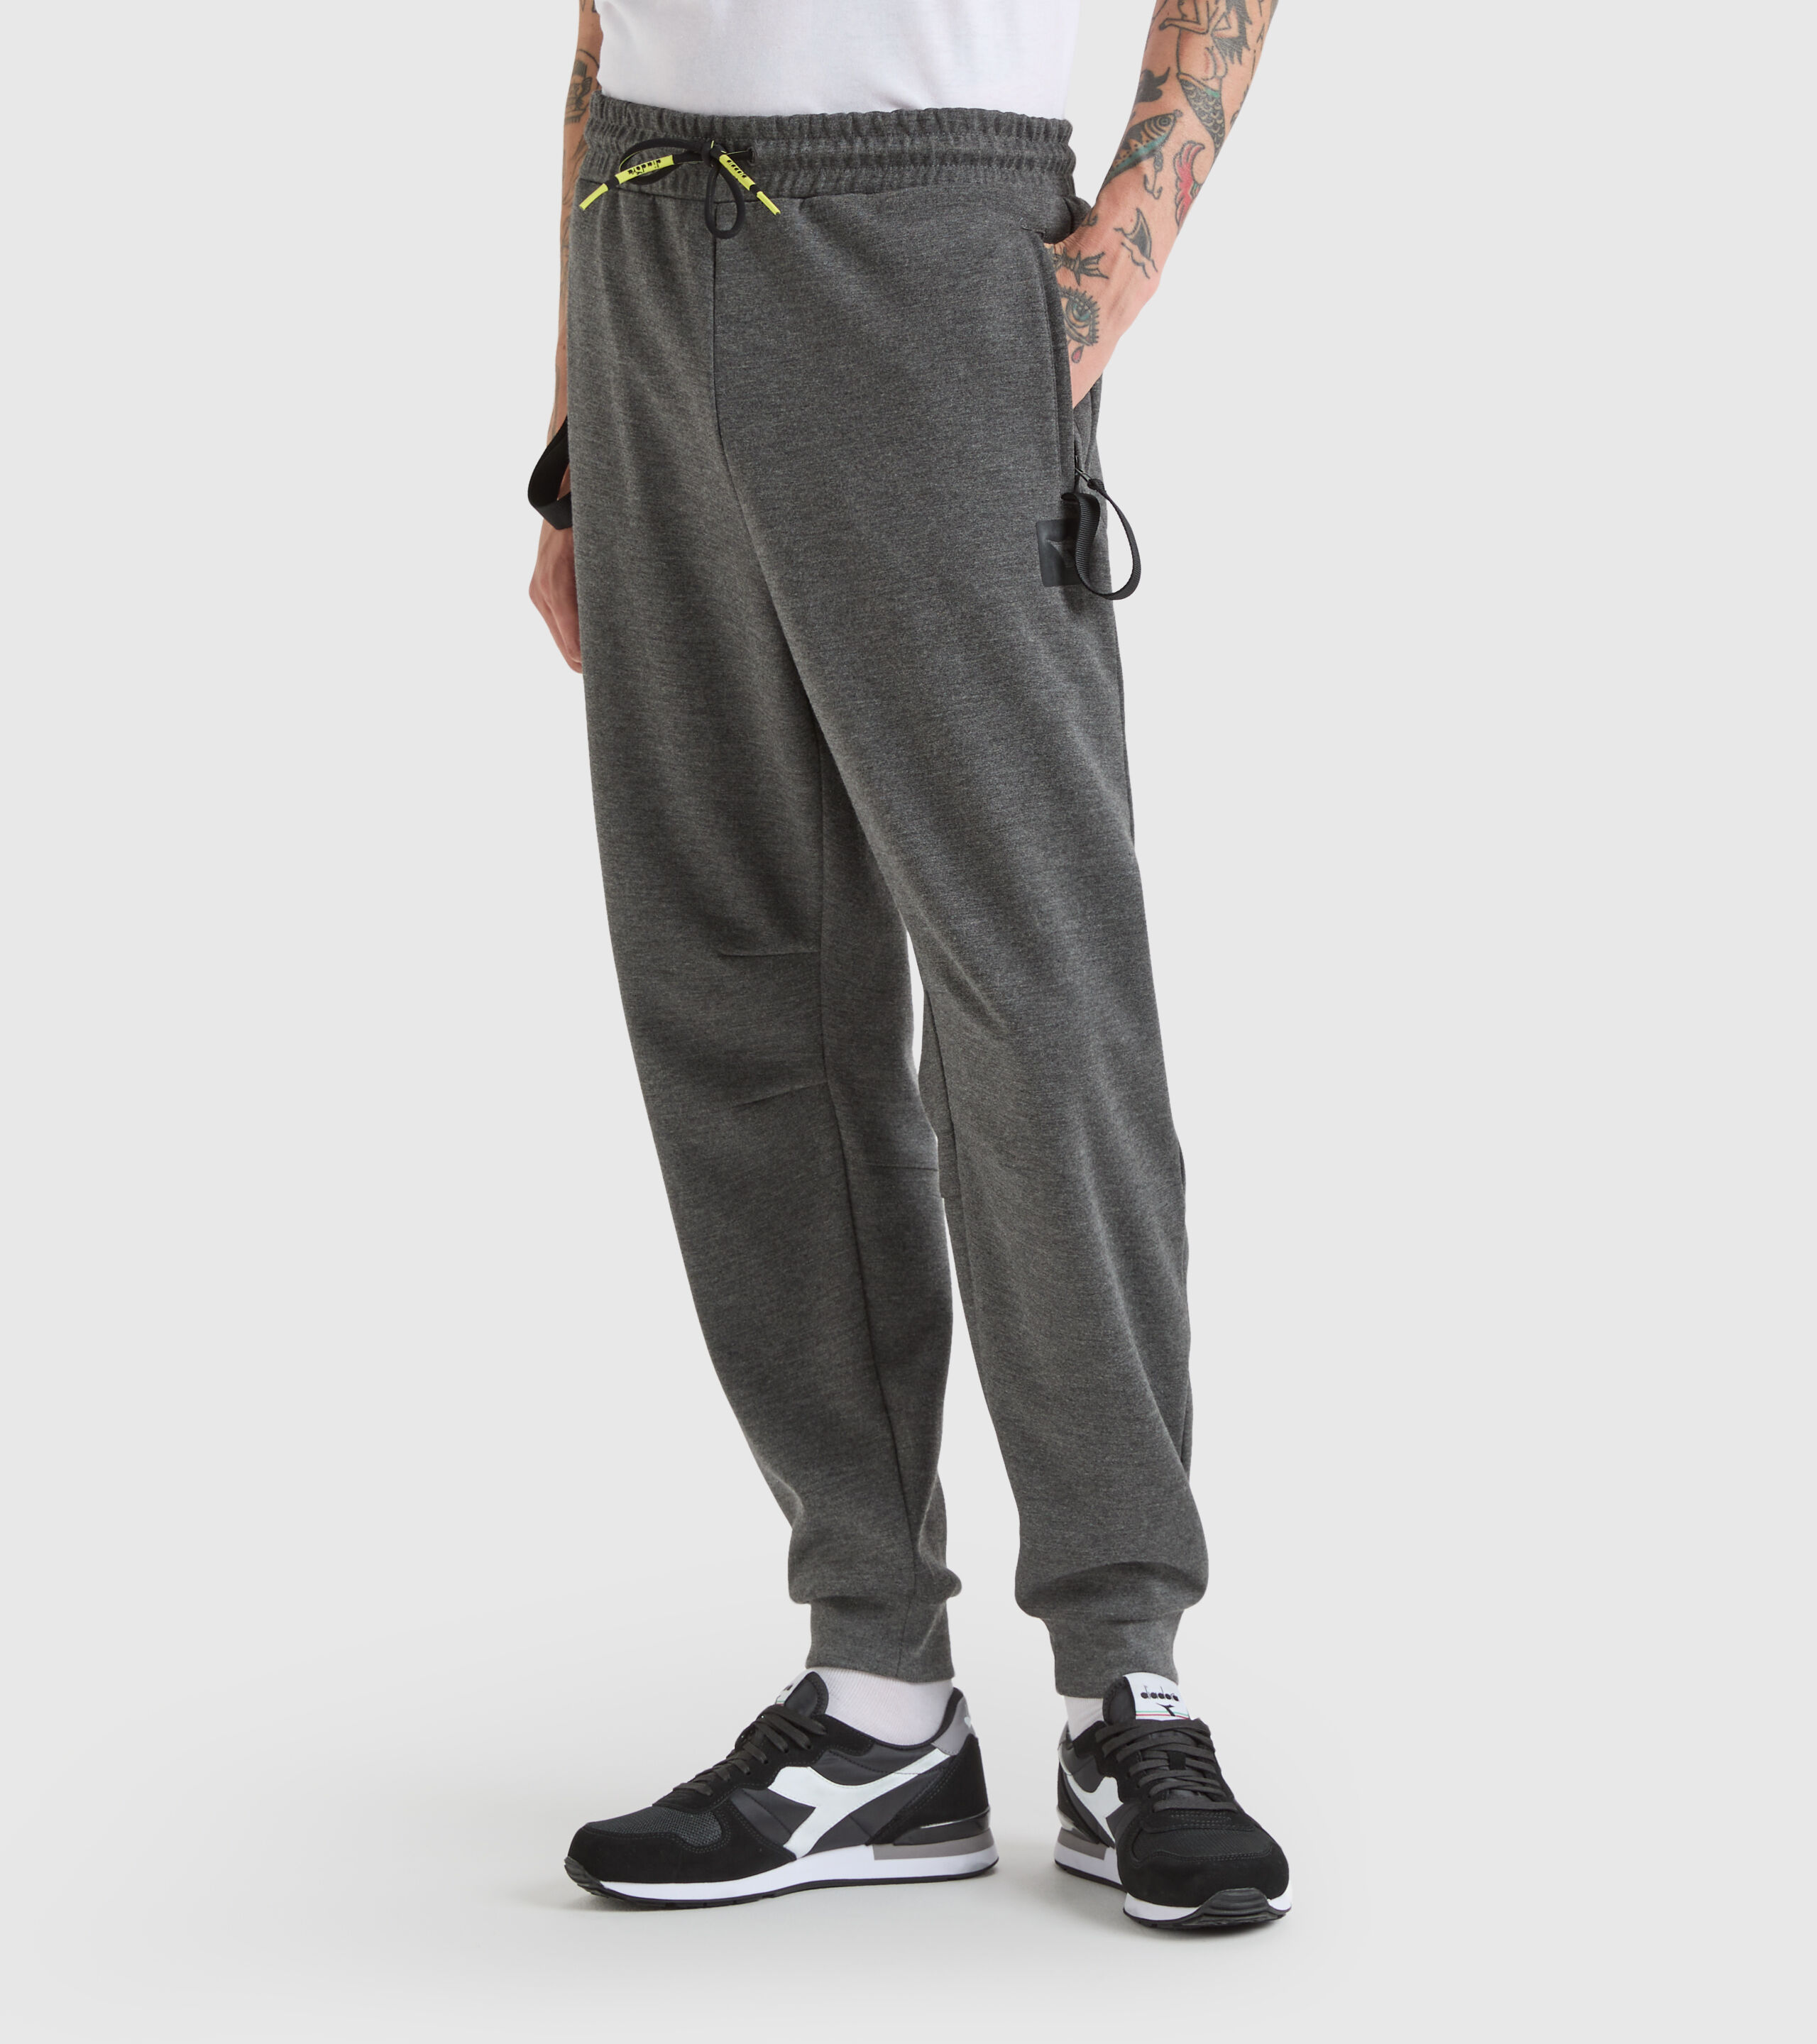 Men Sport Joggers Cargo Pants Urban Trousers Casual Streetwear